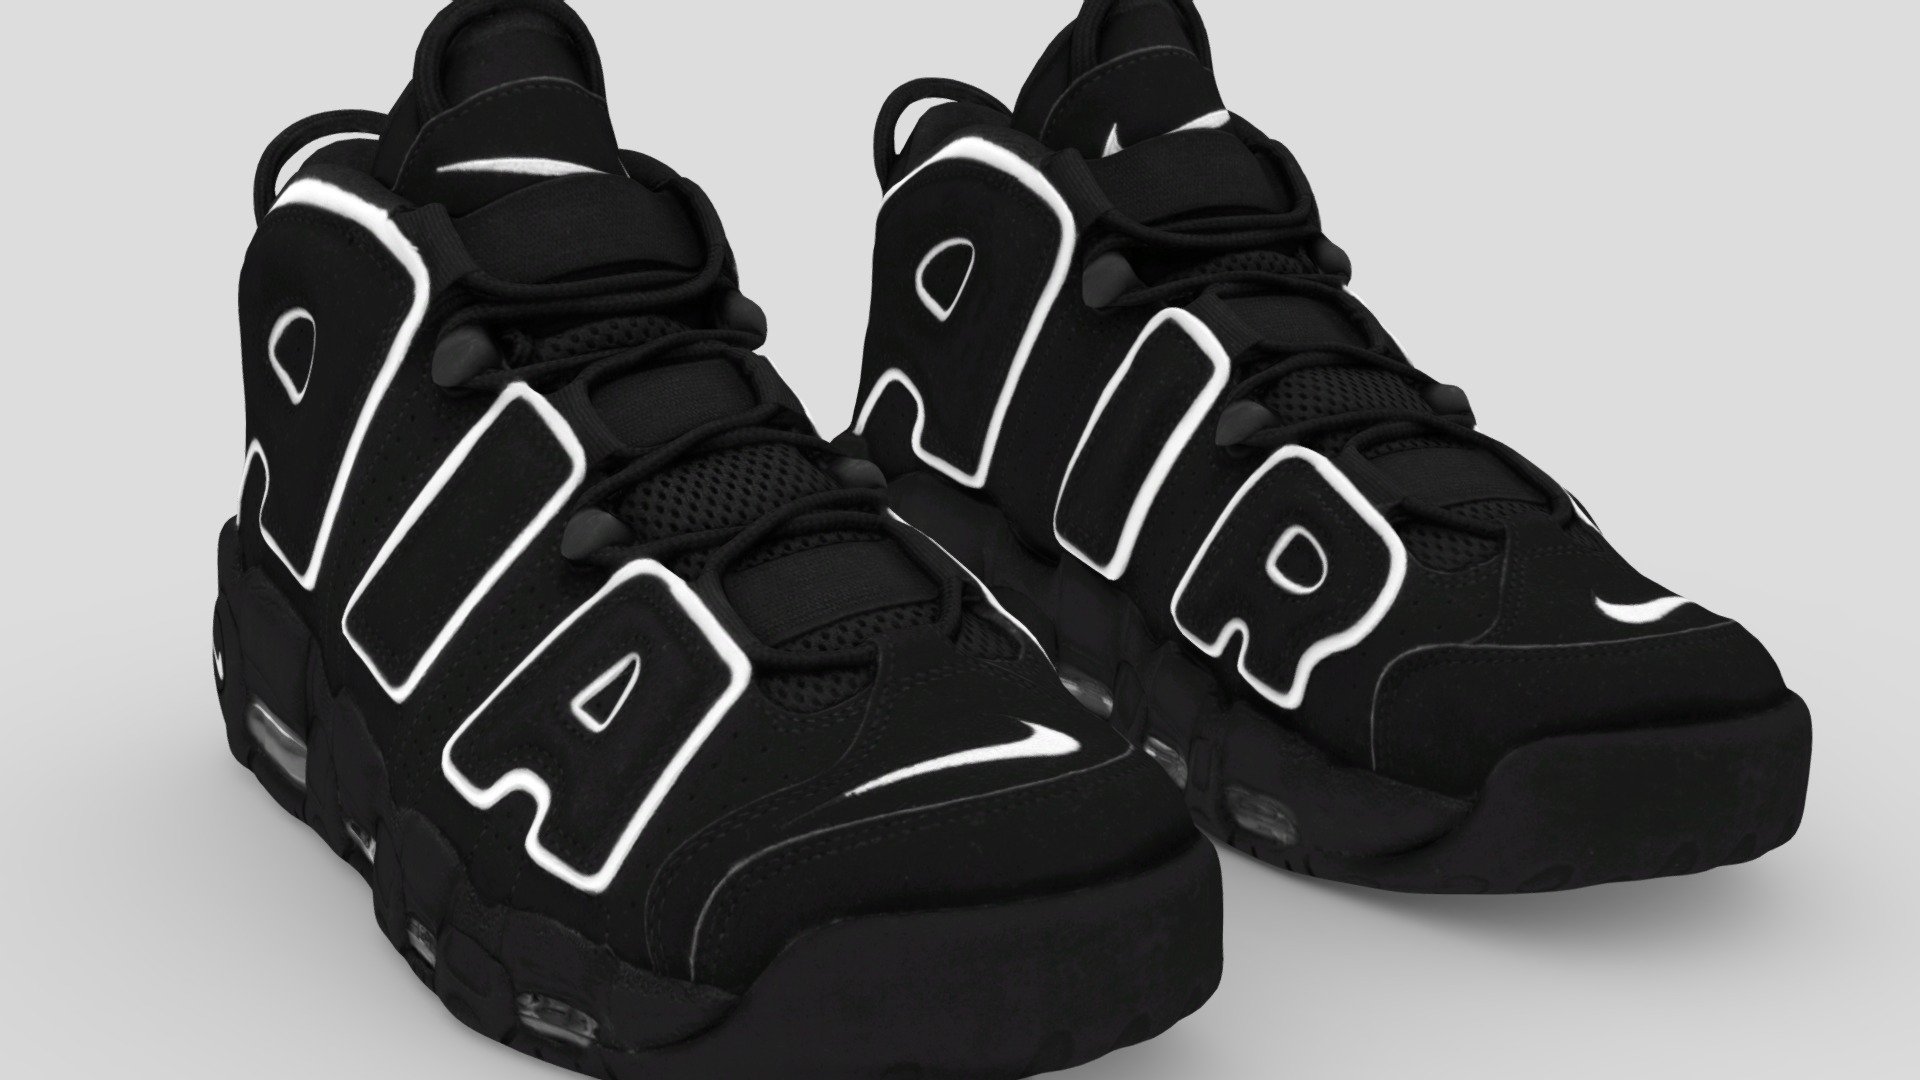 Custom Nike Uptempo  Black nike shoes, Custom nike shoes, Discount nike  shoes